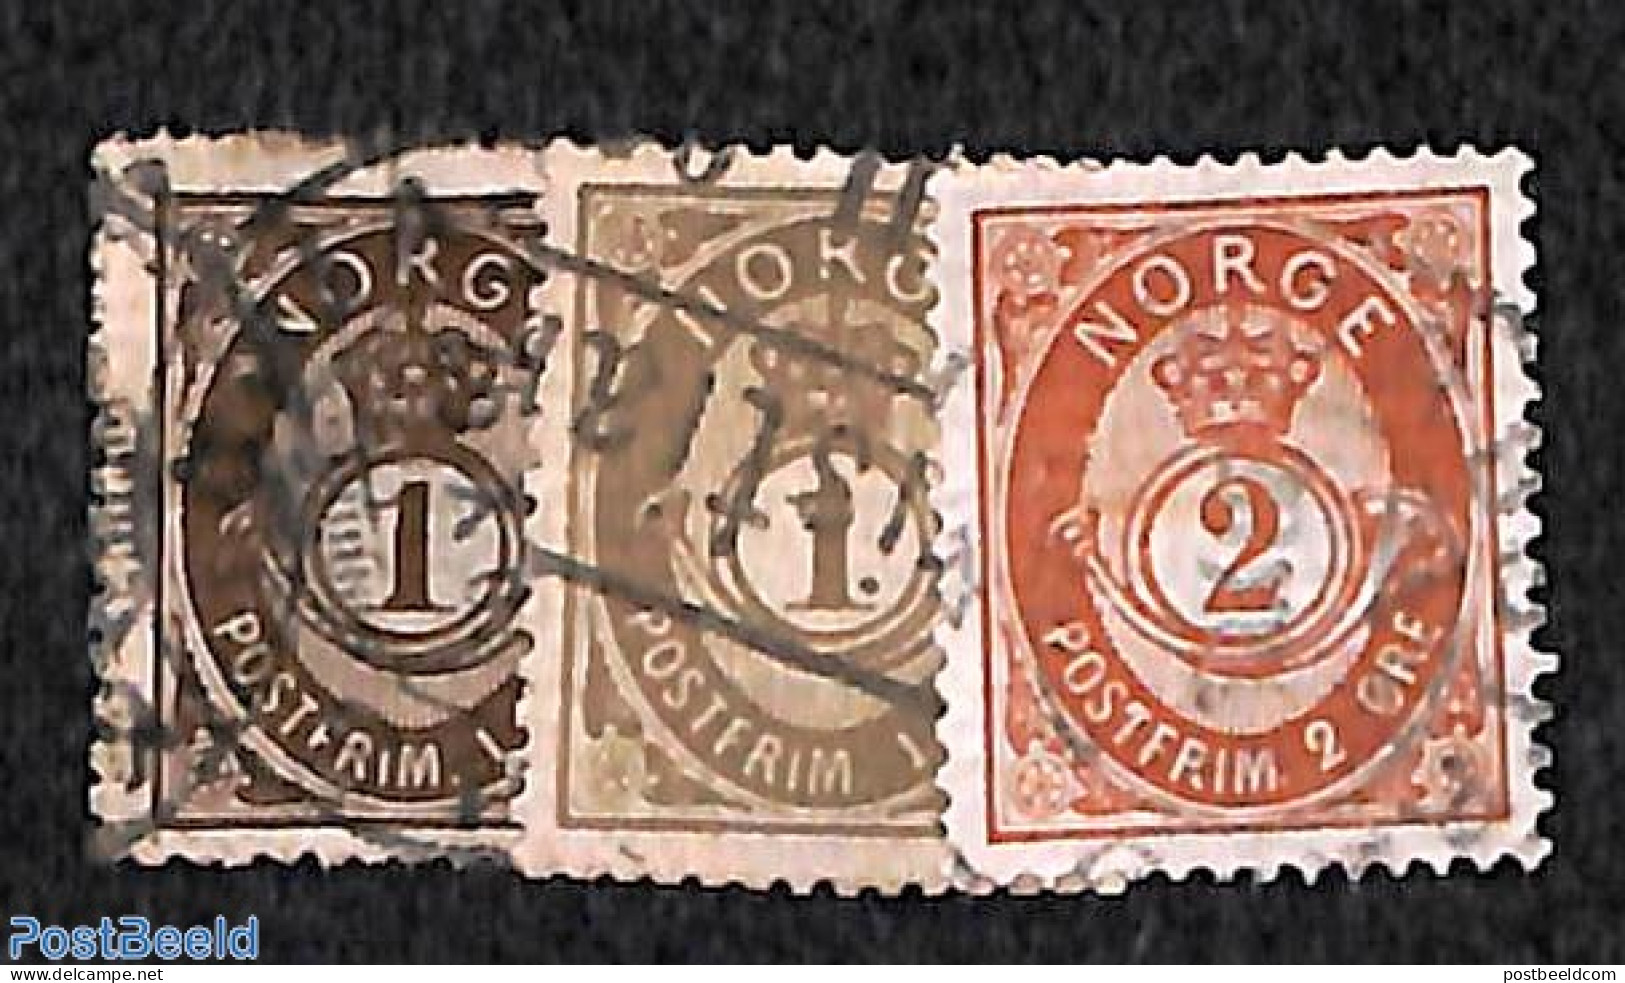 Norway 1890 Definitives 3v, Unused (hinged) - Unused Stamps